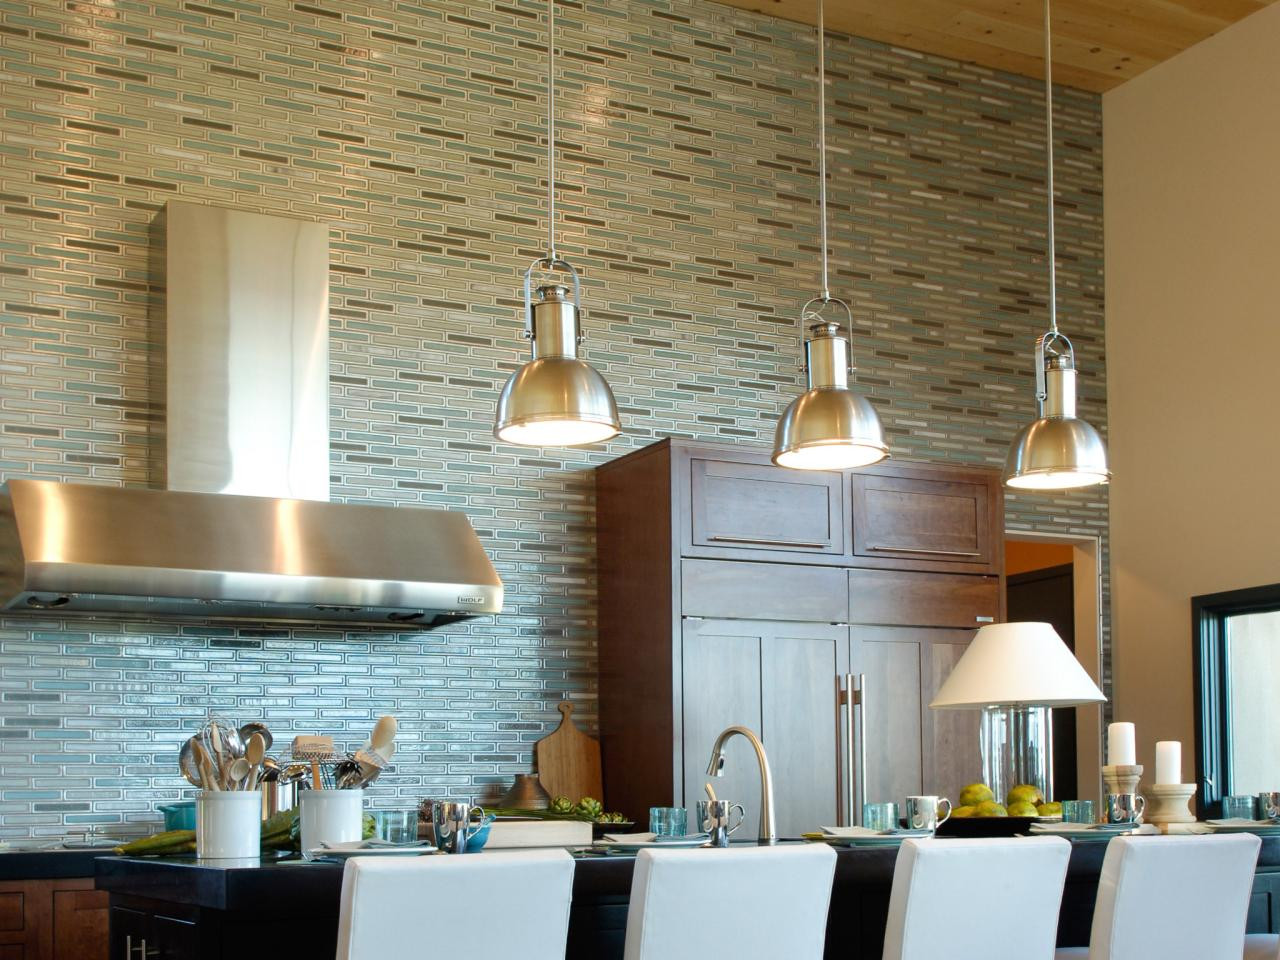 Kitchen Backsplash Tile Ideas
 75 Kitchen Backsplash Ideas for 2019 Tile Glass Metal etc